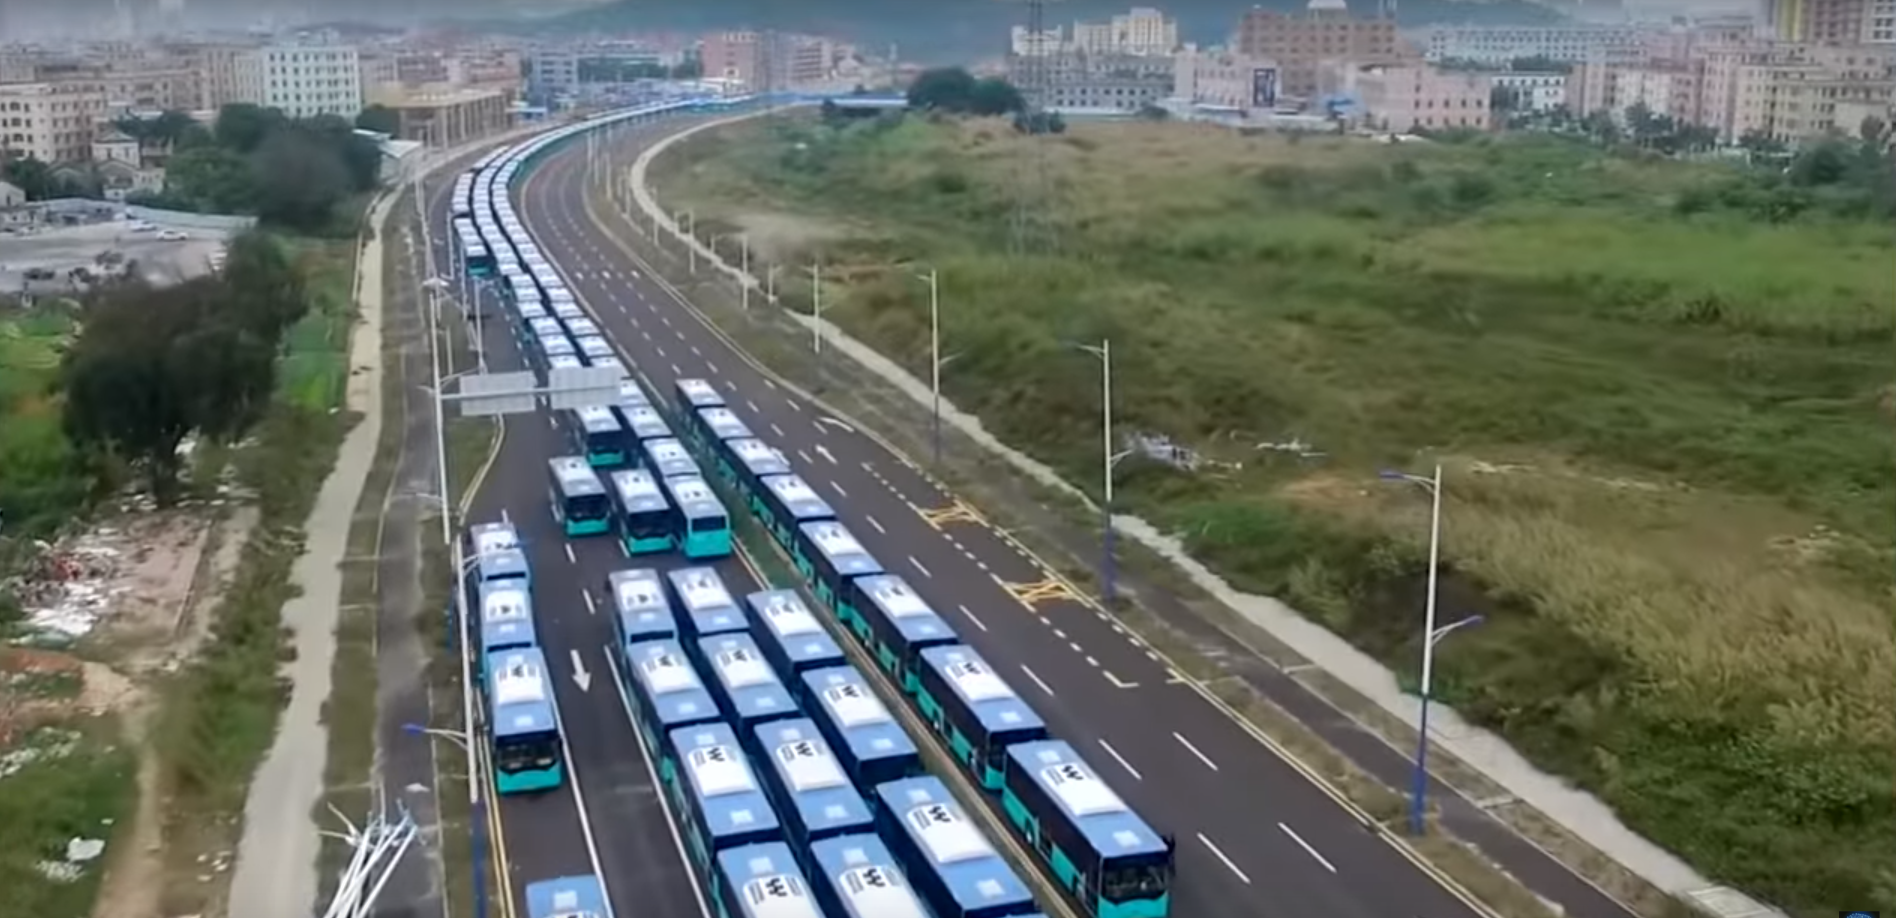 biggest electric bus fleet